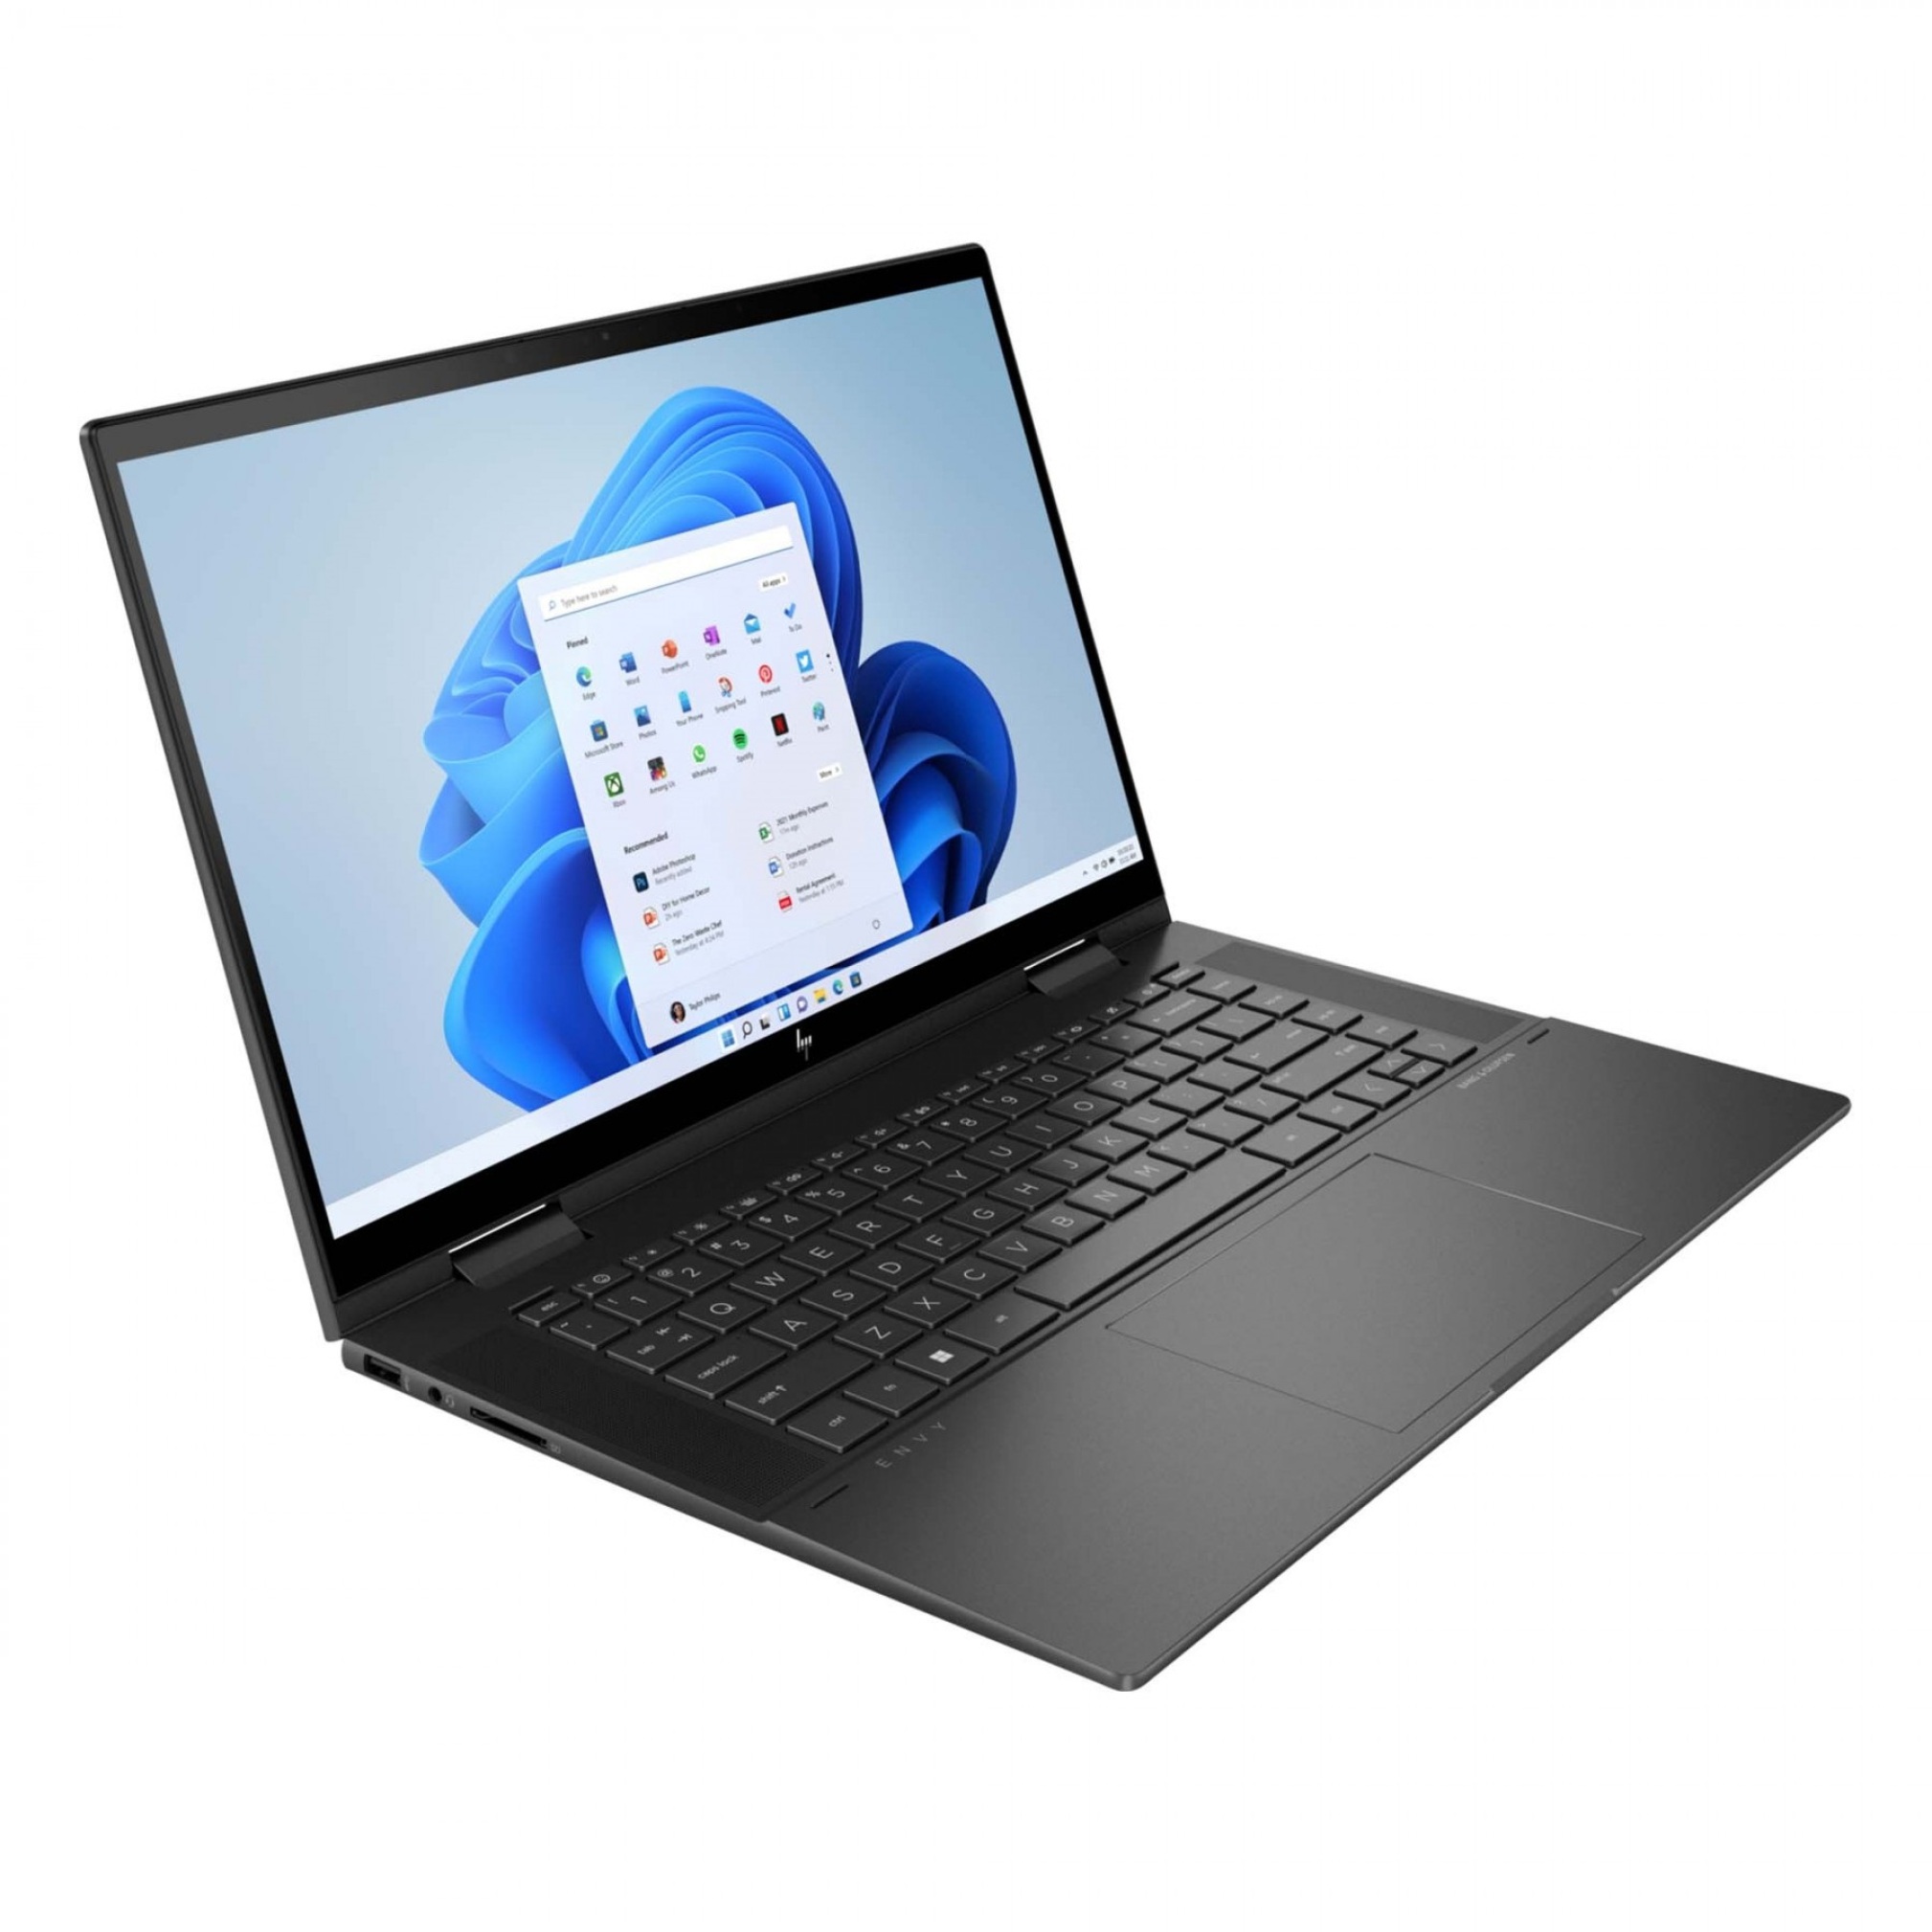  خرید و قیمت لپ تاپ اچ پی HP ENVY X360 2-In-1 Laptop 15-Ey0013dx | لاکچری لپ تاپ 